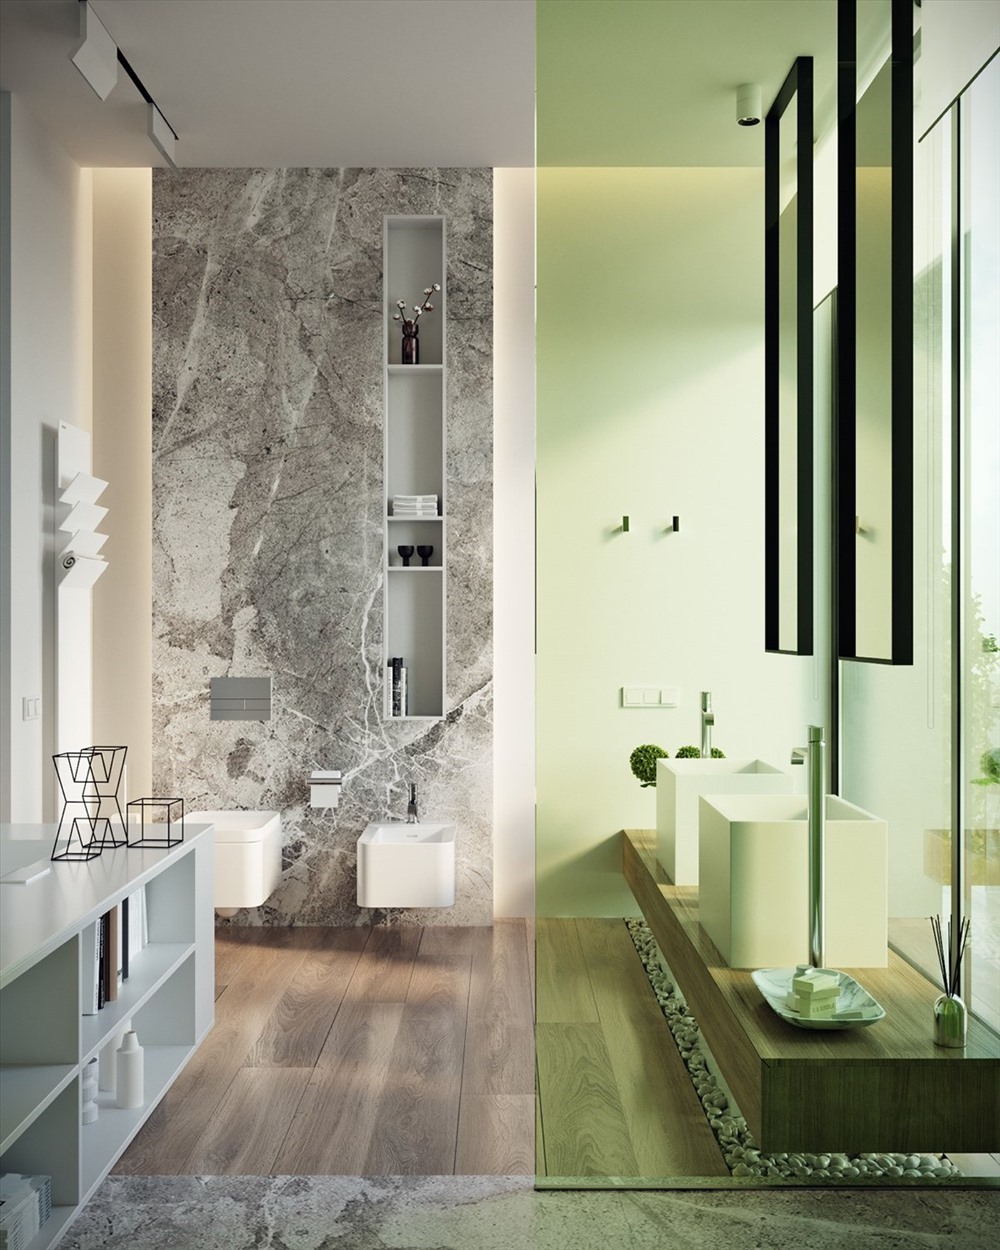 Cửa kính nhà tắm cung cấp ánh sáng tự nhiên tốt nhất có thể để sẵn sàng mỗi sáng. Màu xanh lá cây tươi sáng trở nên dịu dàng với những bức tường đá xám loang lổ và sàn gỗ nâu tại đây.